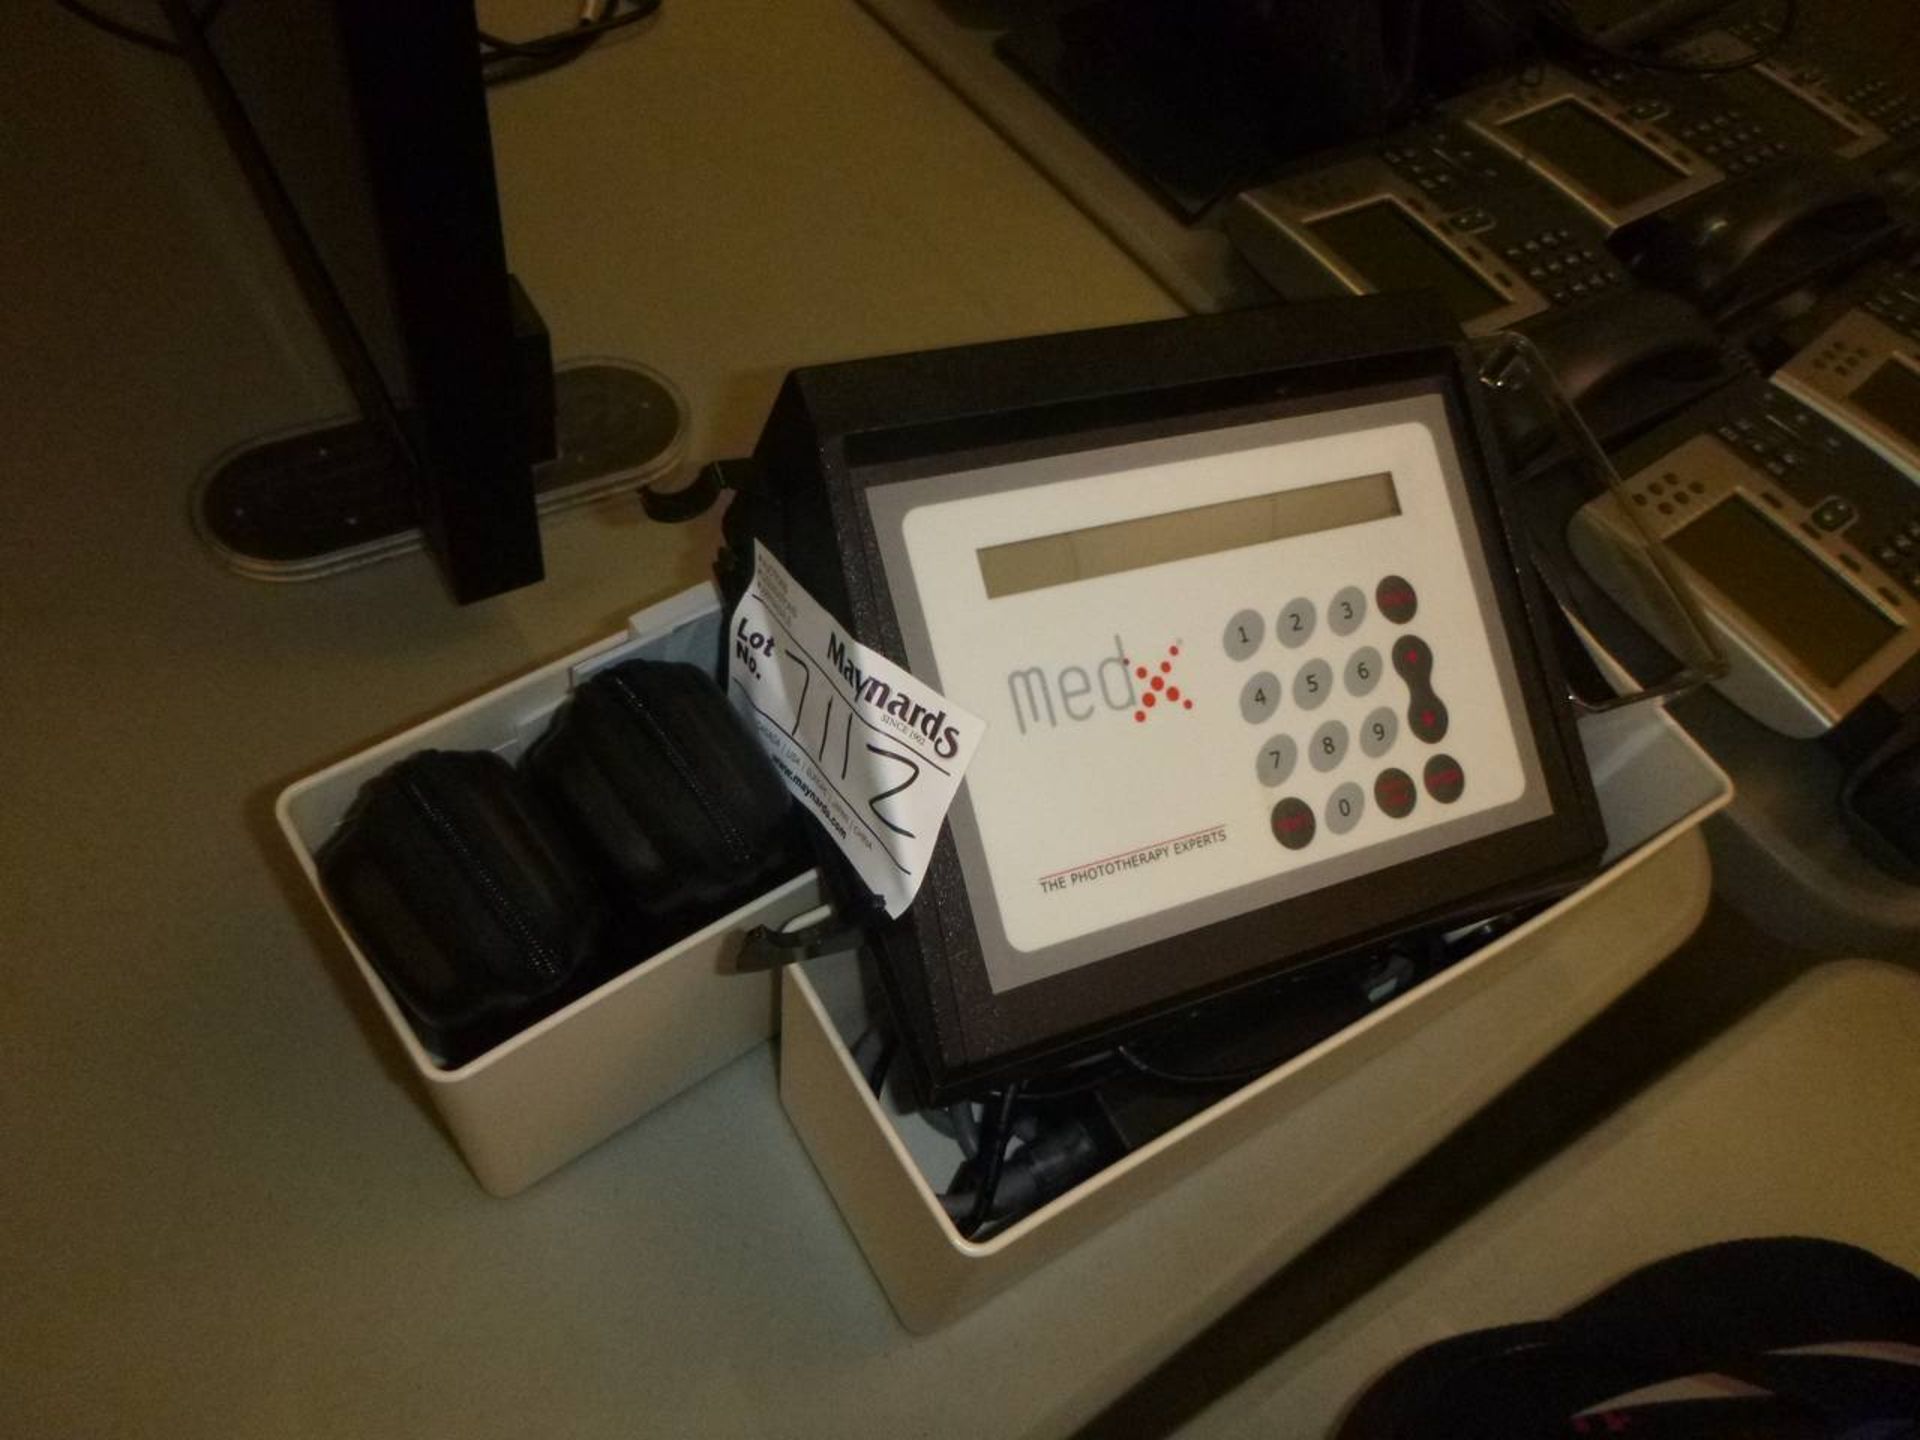 MedX MBM1100 Phototherapy system